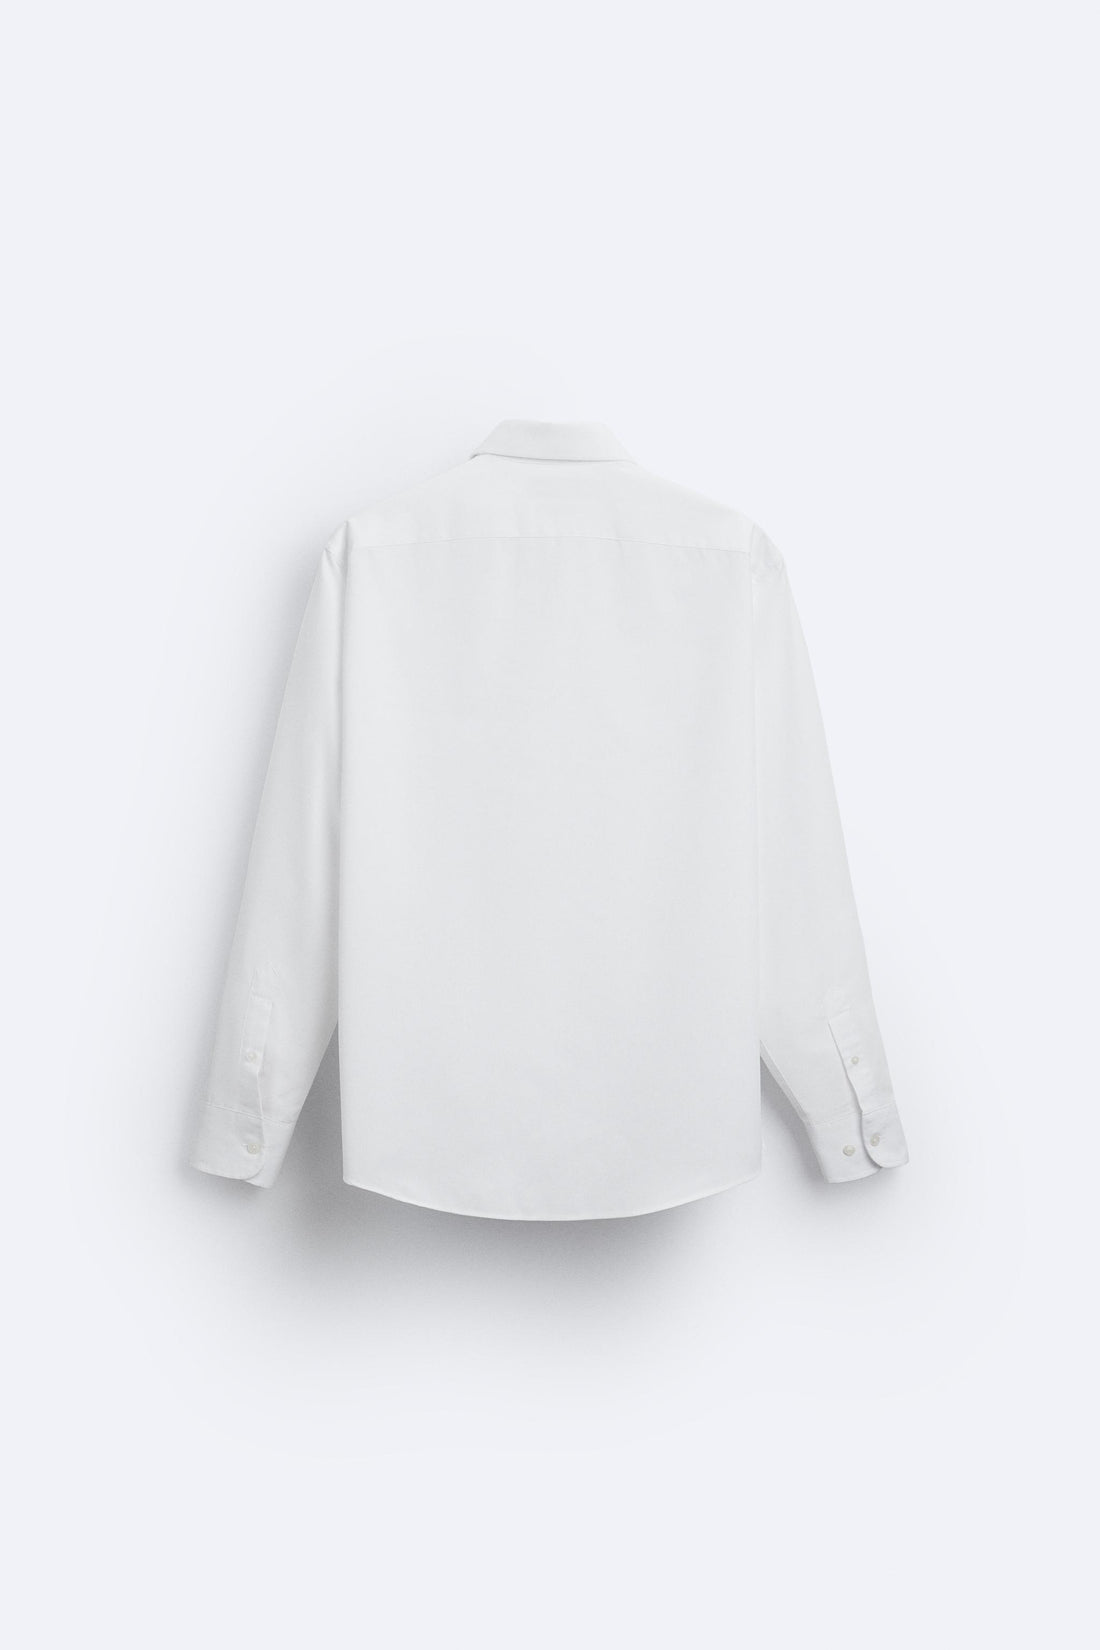 Zara Camisa Easy Care Com Estrutura Branca